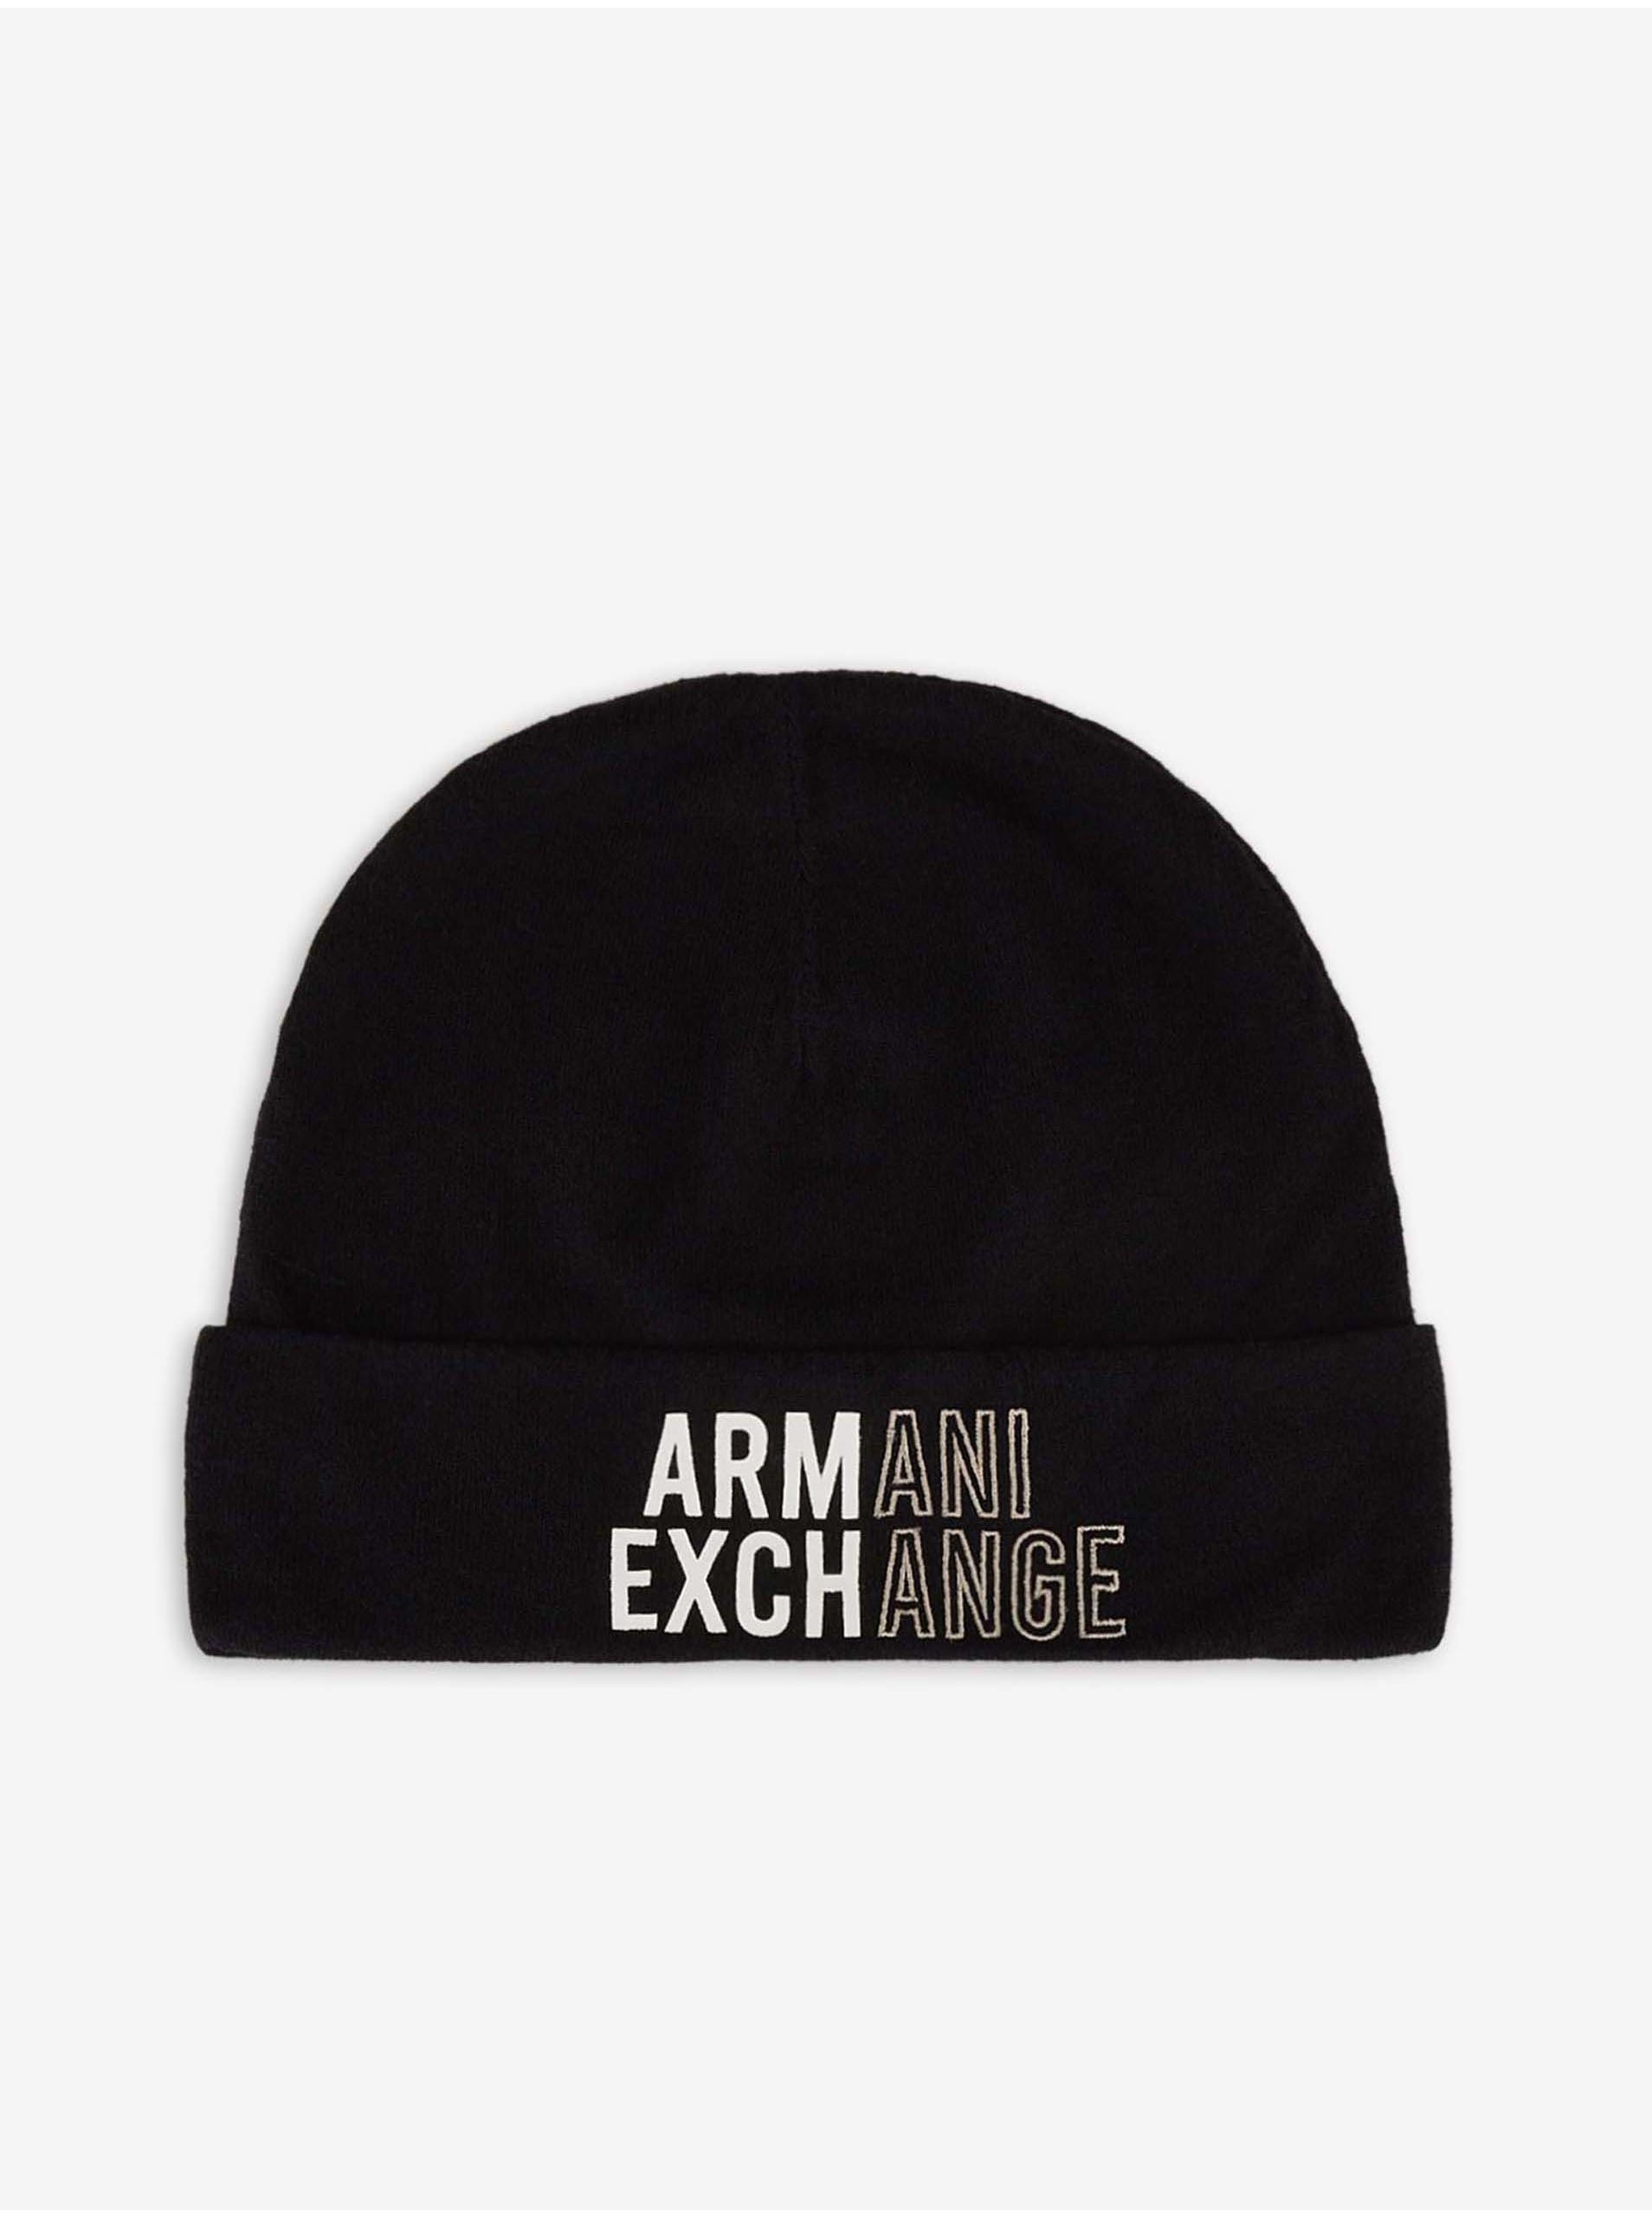 Lacno Čierna pánska zimná čiapka s nápisom Armani Exchange